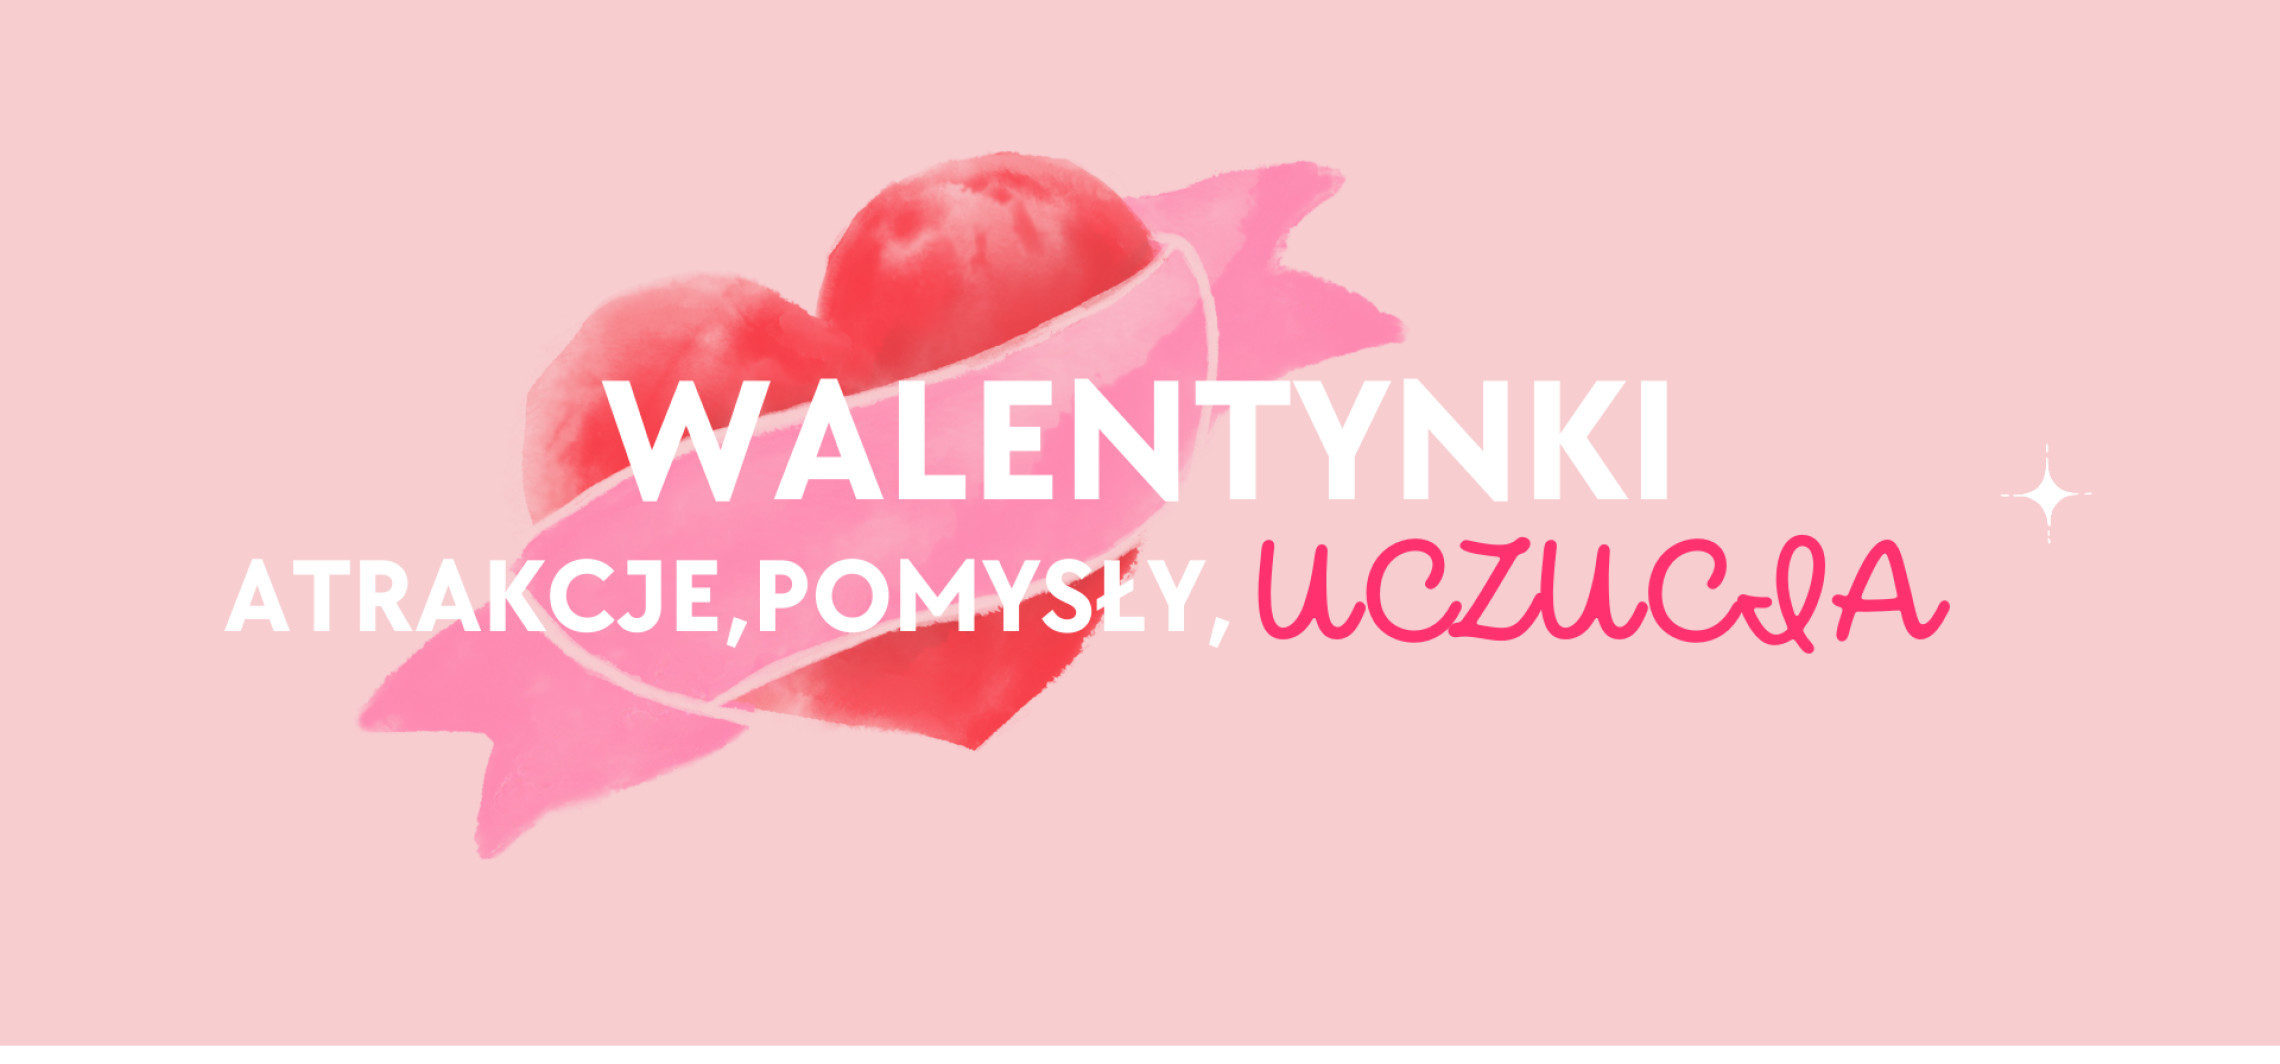 Info w minutę: Walentynki - co ciekawego w Inowrocławiu?